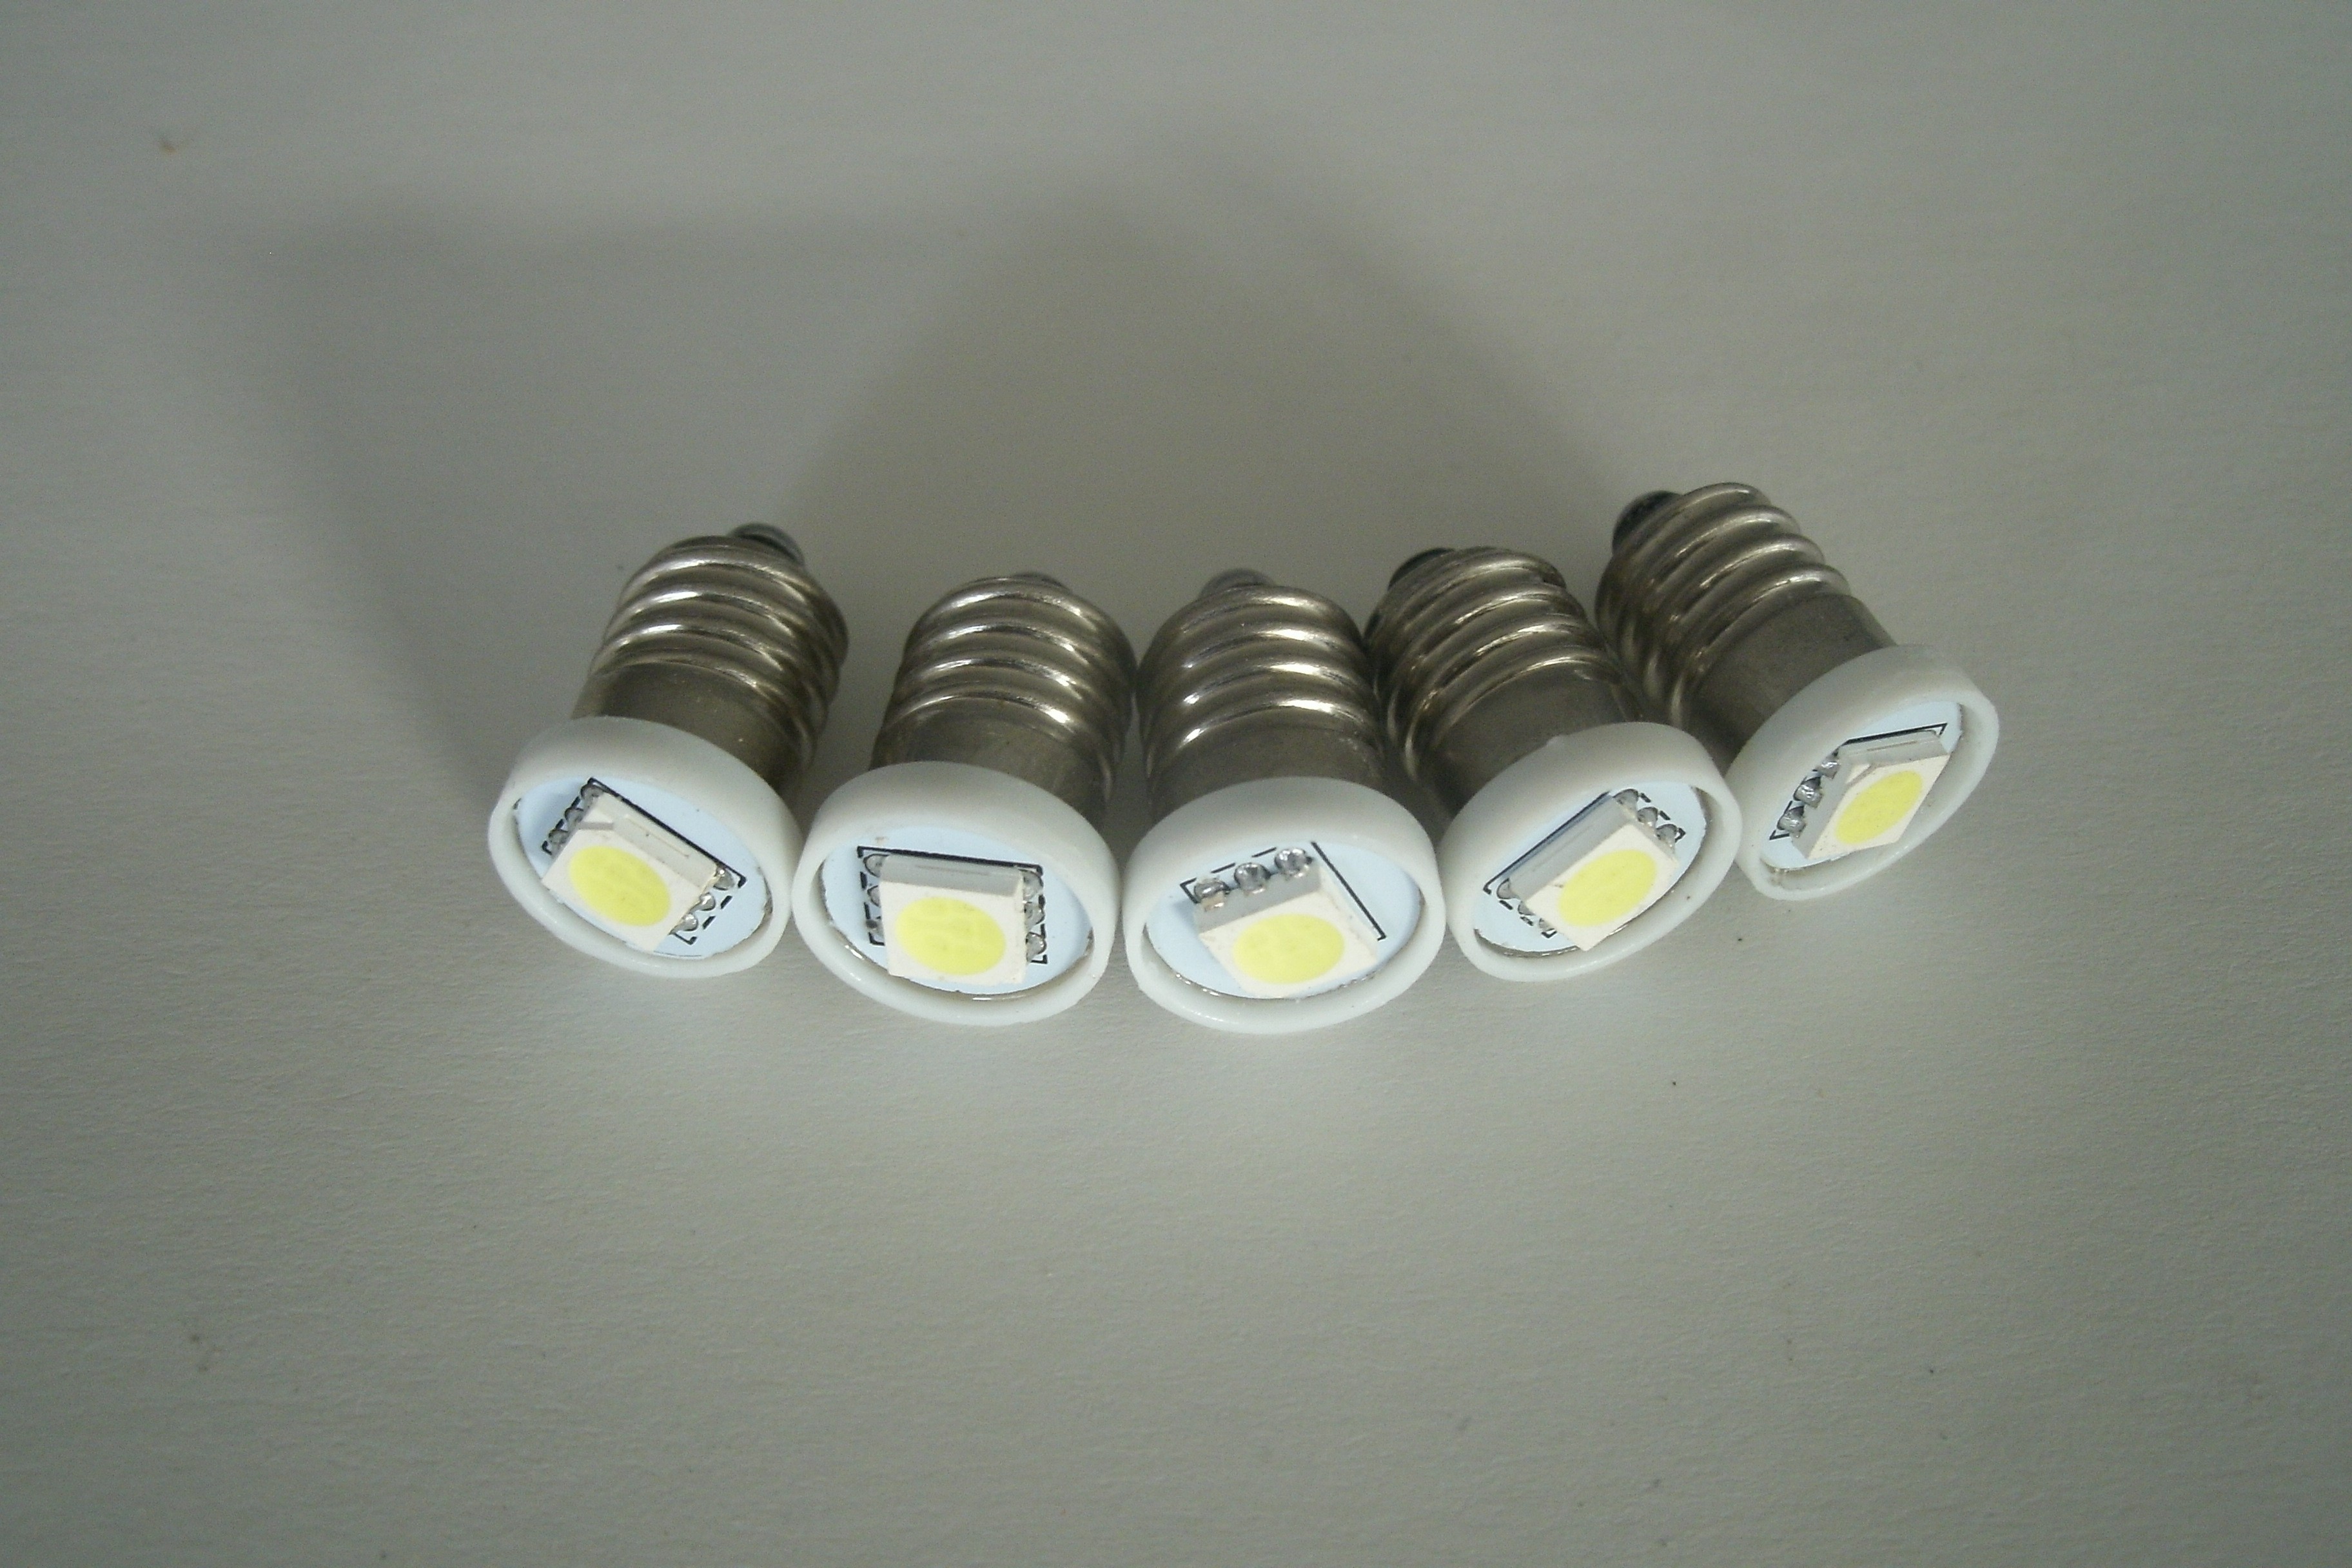 5 ampoules à visser à led (E10) tableau de bord - Atelier des anglaises